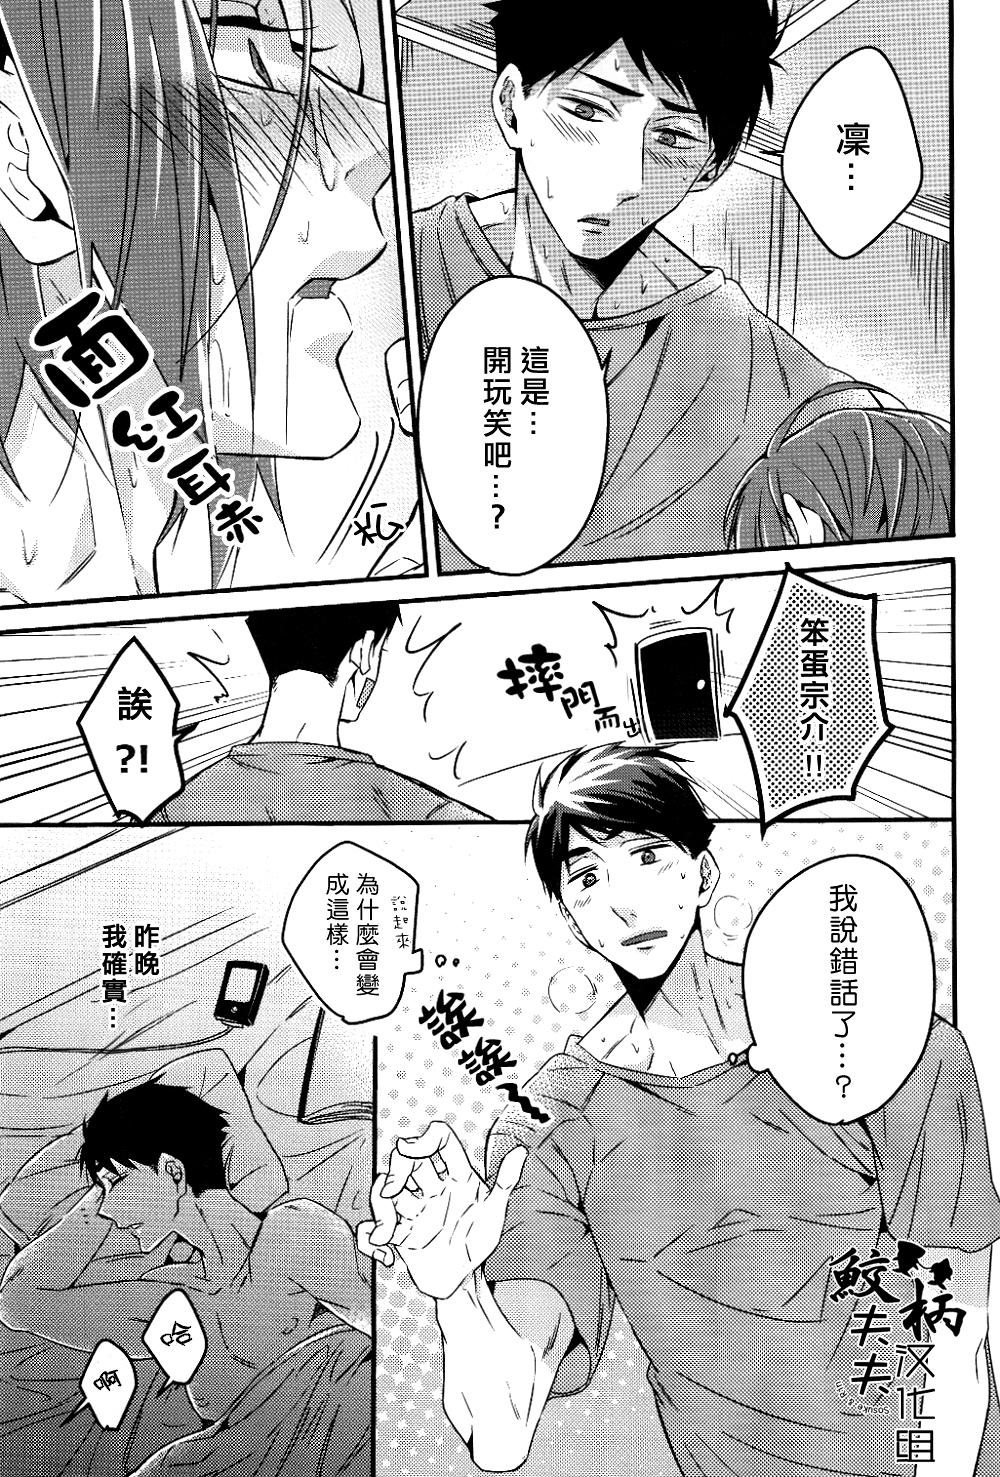 Flashing Gomen daisukida! - Free Sensual - Page 6